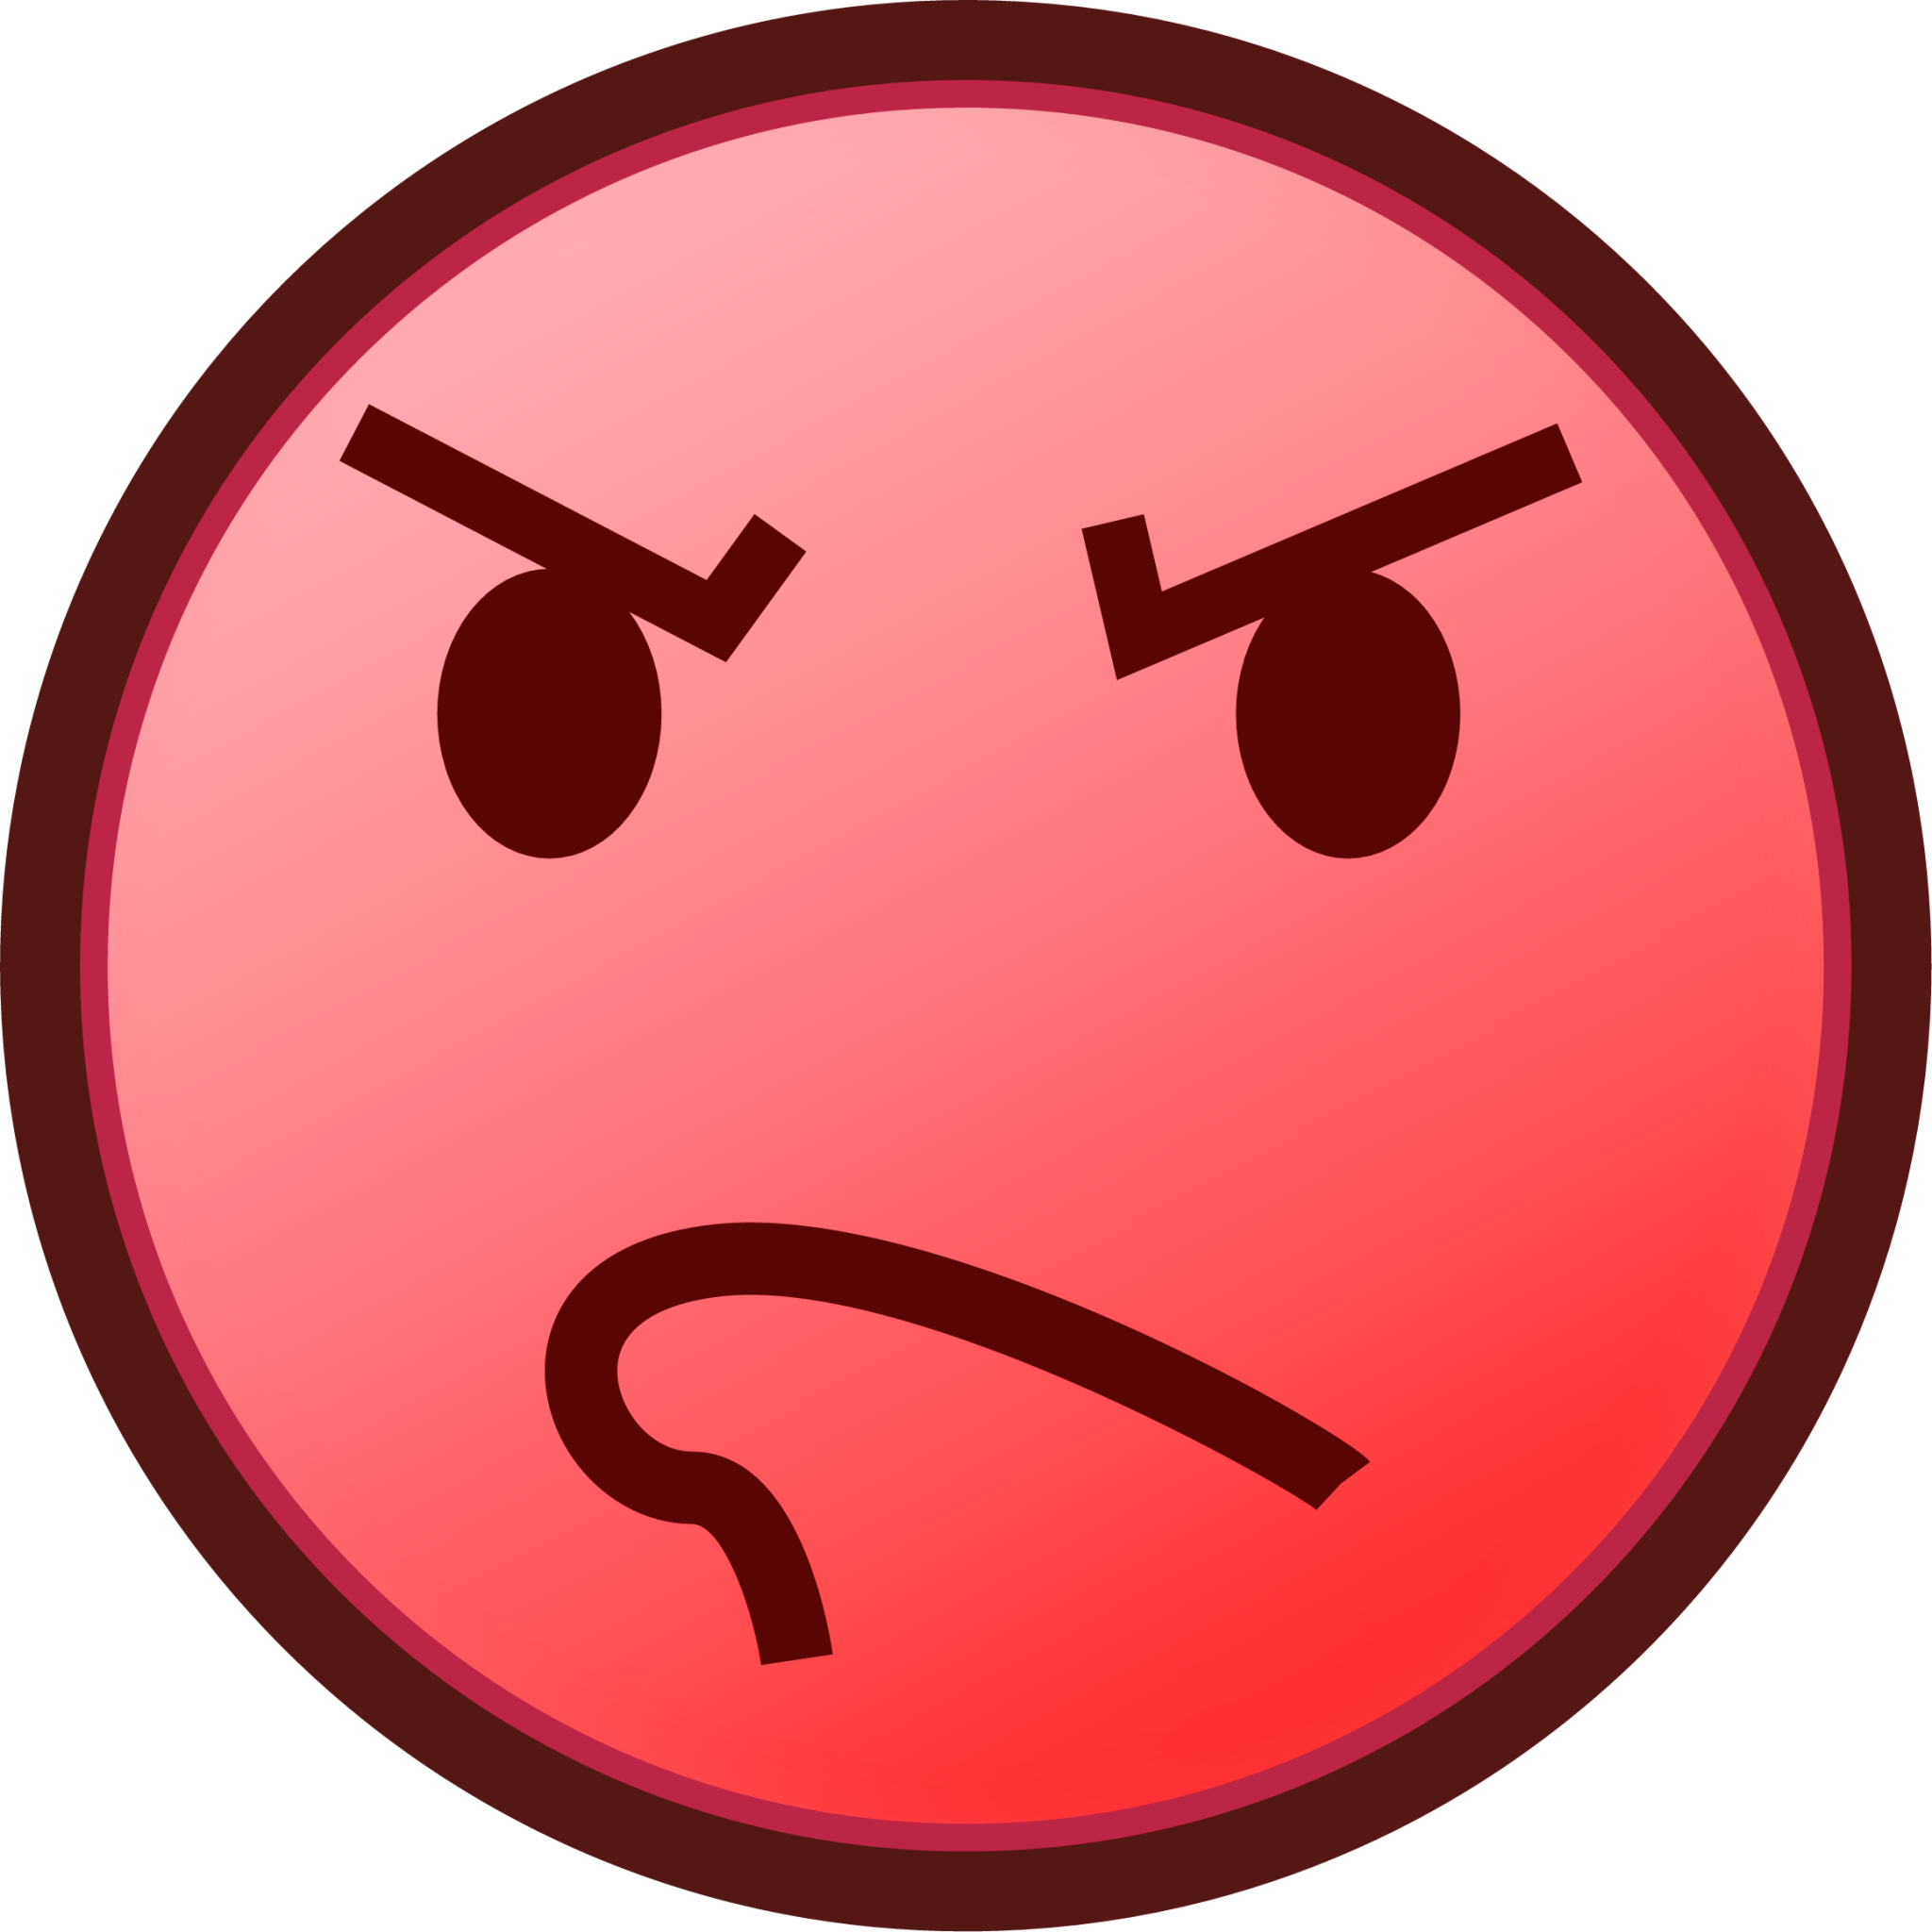 rage (plain) emoji